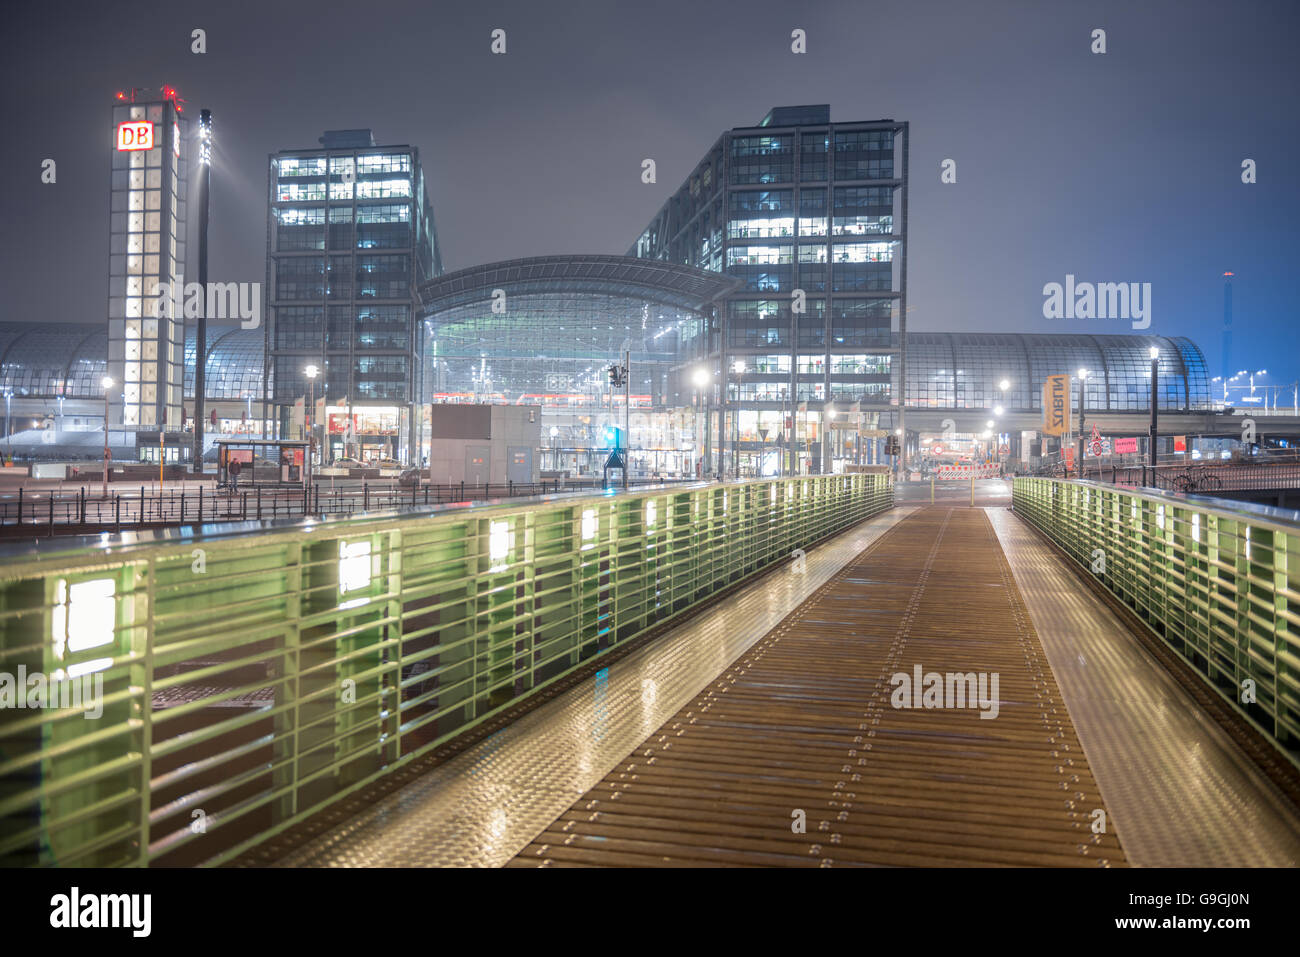 Berlín, Alemania. Vista de la estación principal de tren de noche Foto de stock